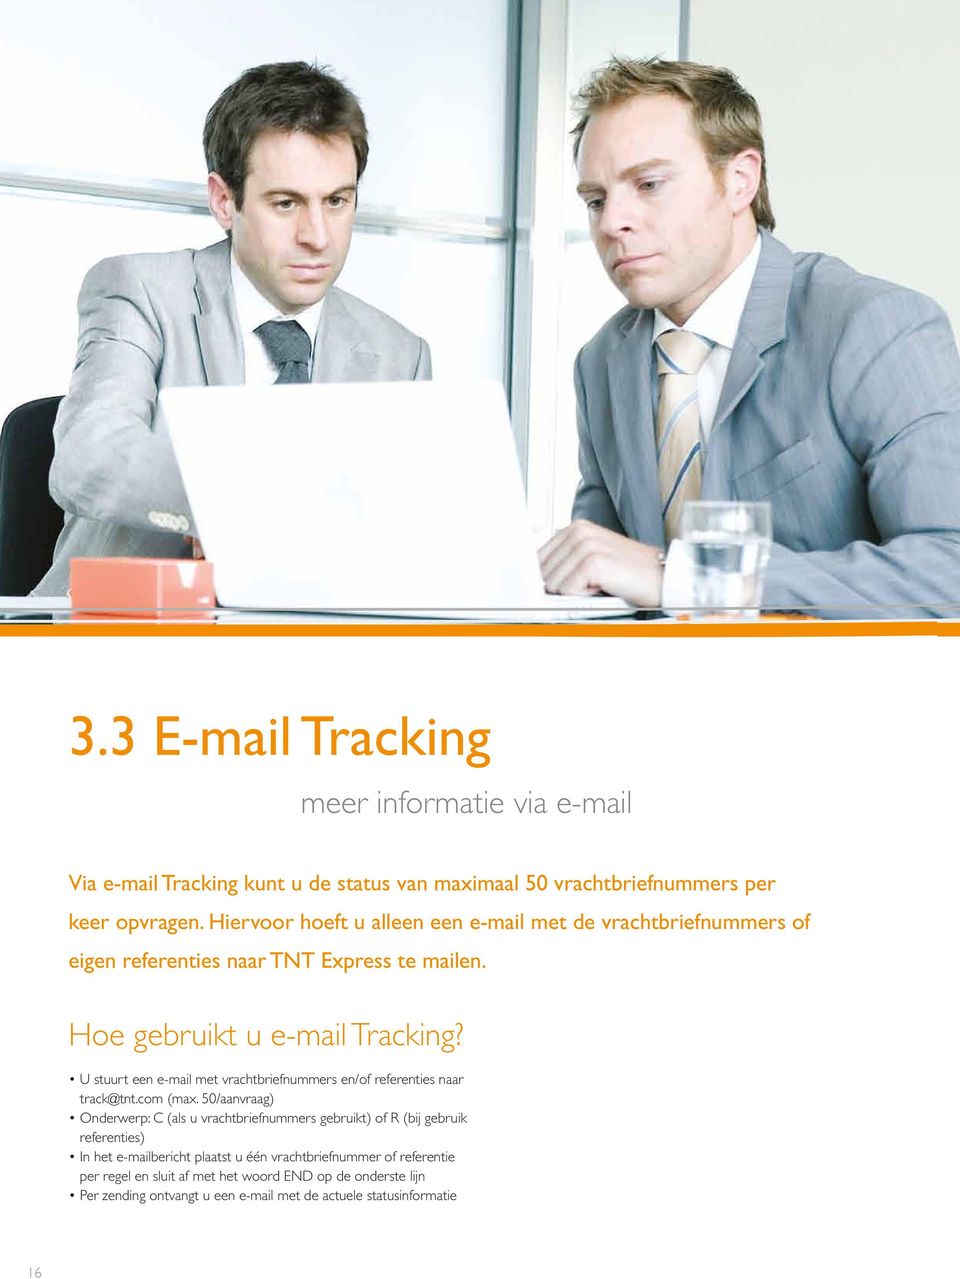 U stuurt een e-mail met vrachtbriefnummers en/of referenties naar track@tnt.com (max.